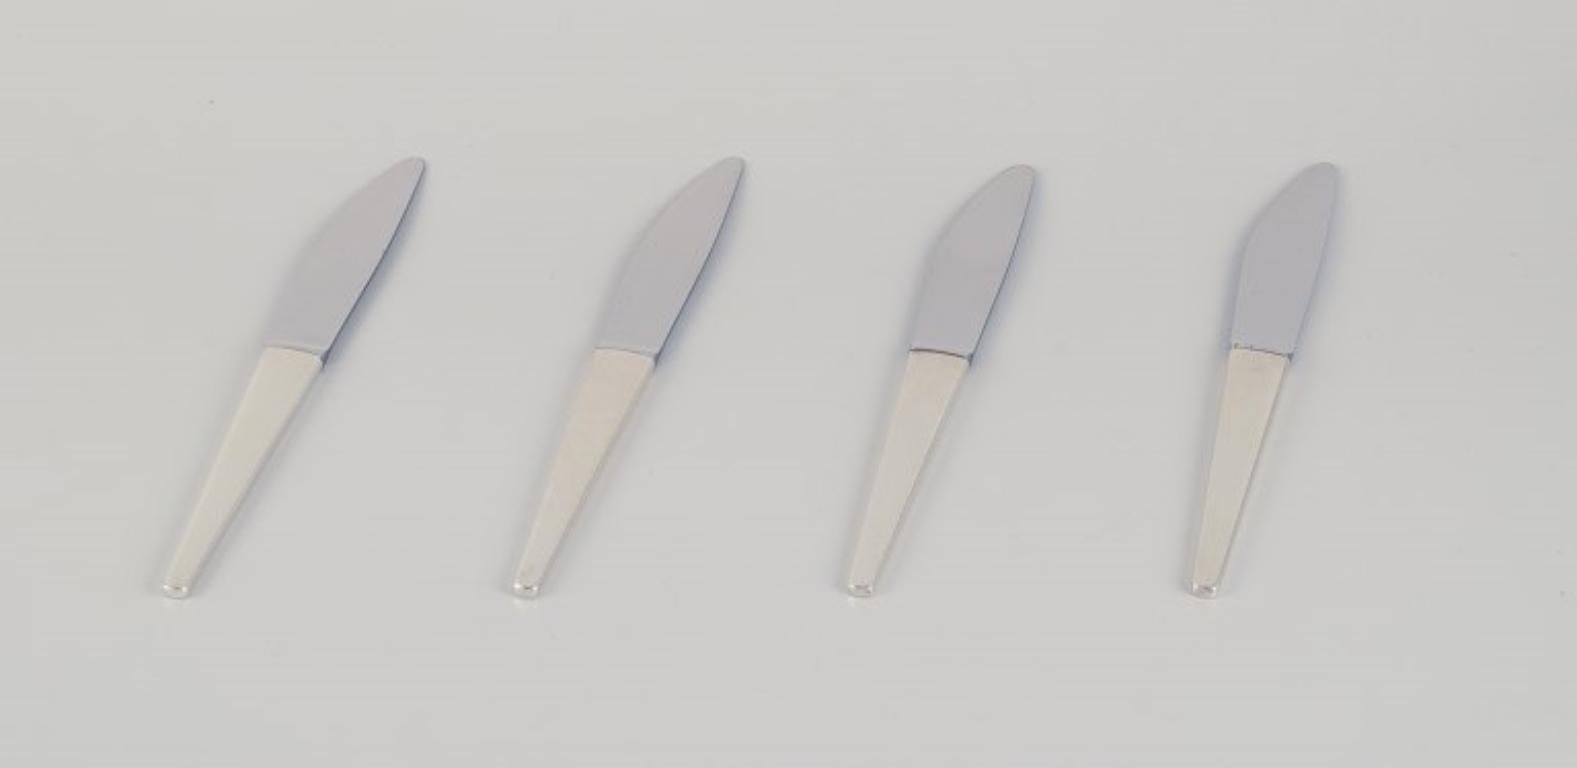 Henning Koppel pour Georg Jensen. 
Un ensemble de quatre couteaux de table Caravel en argent sterling avec des lames en acier inoxydable.
Années 1960/1970.
Parfait état.
Dimensions : I.L.A. 21,5 cm.